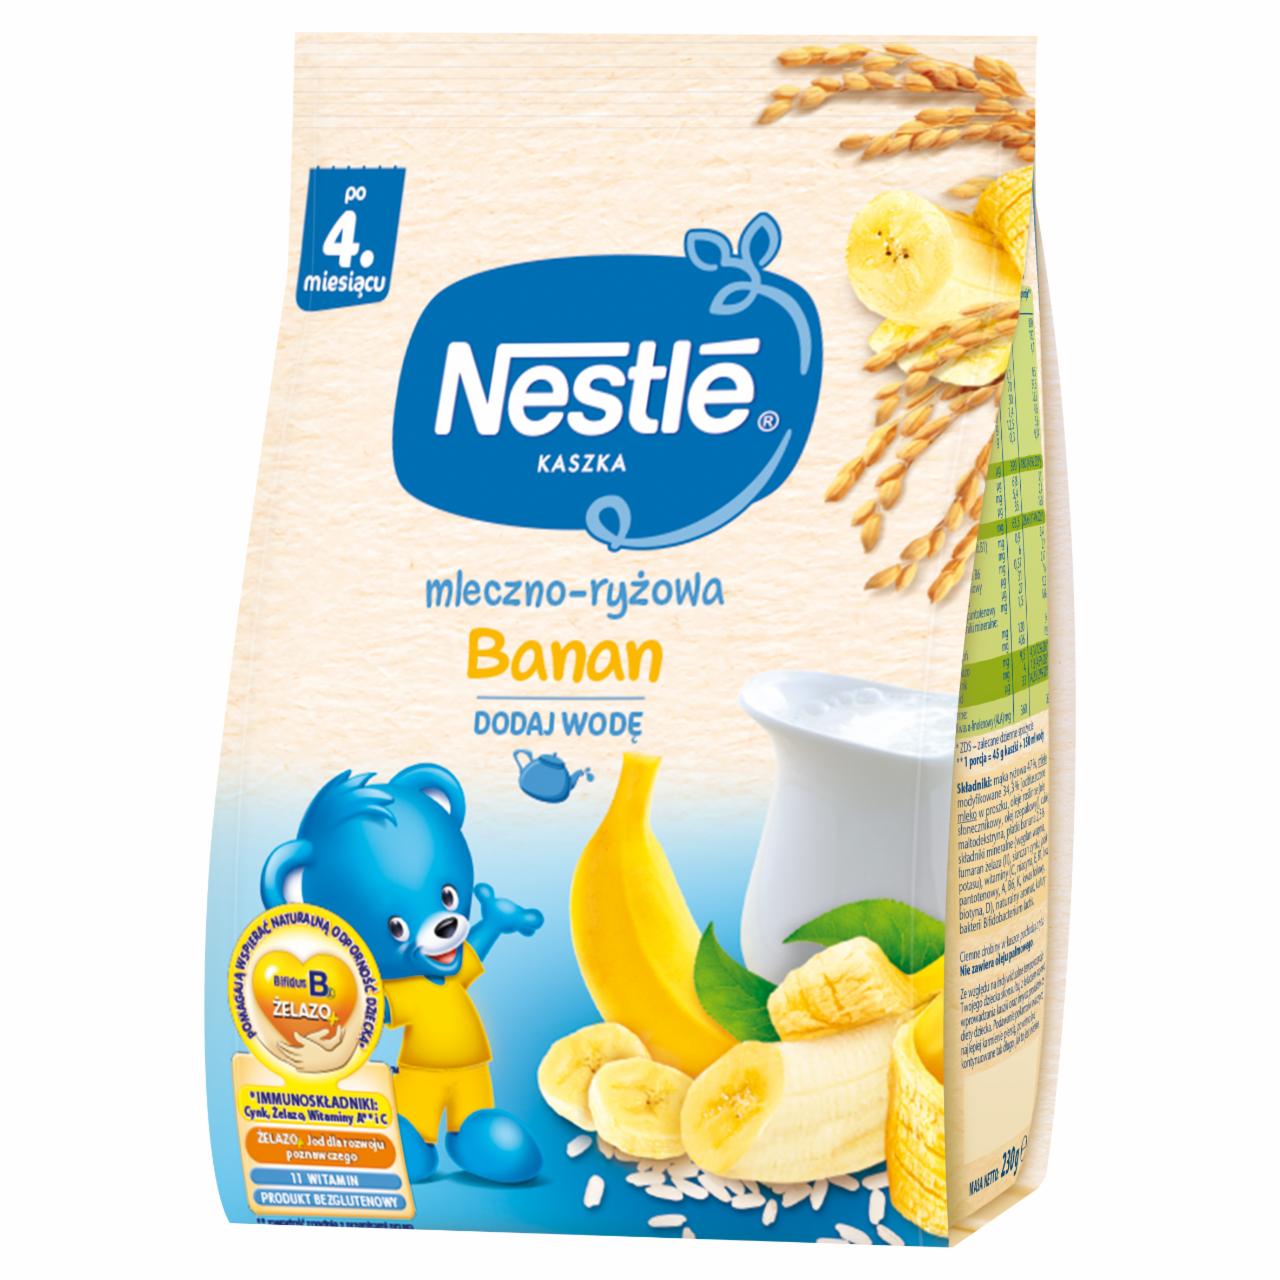 Zdjęcia - Nestlé Kaszka mleczno-ryżowa banan dla niemowląt po 4. miesiącu 230 g